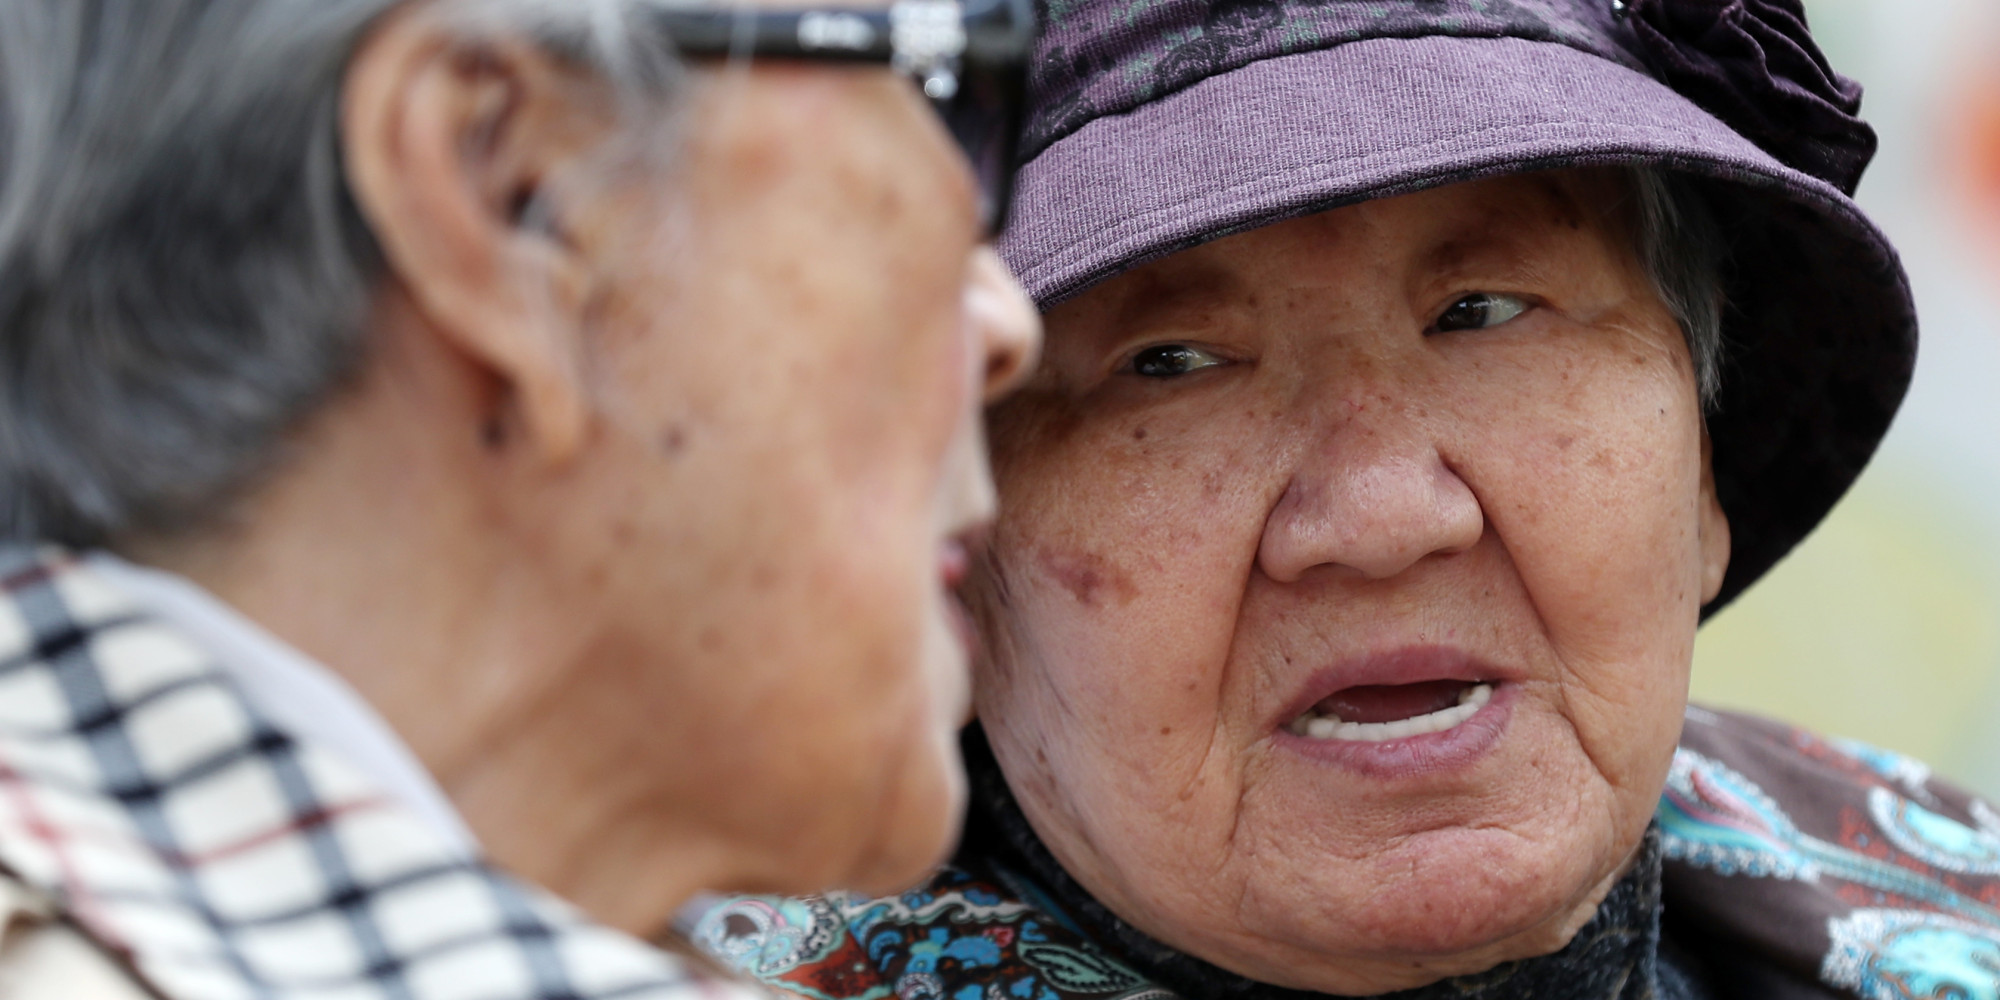 '일본 지진'에 성금 기부한 위안부 할머니의 한 마디(사진)